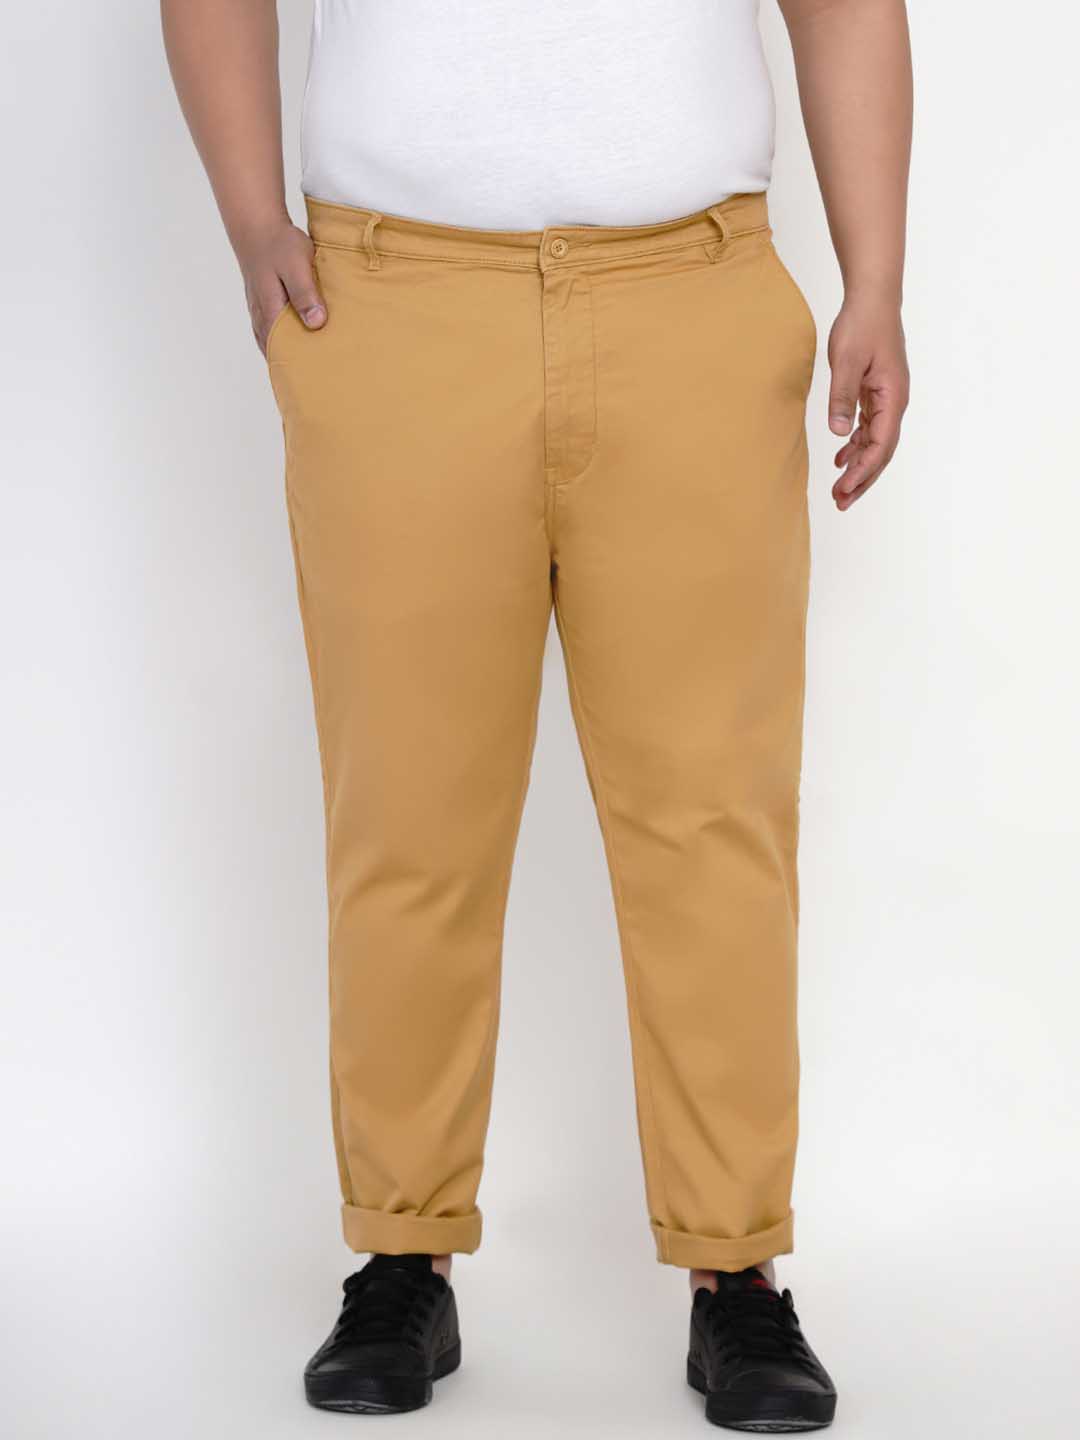 bottomwear/trousers/JPTR2195A/jptr2195a-1.jpg